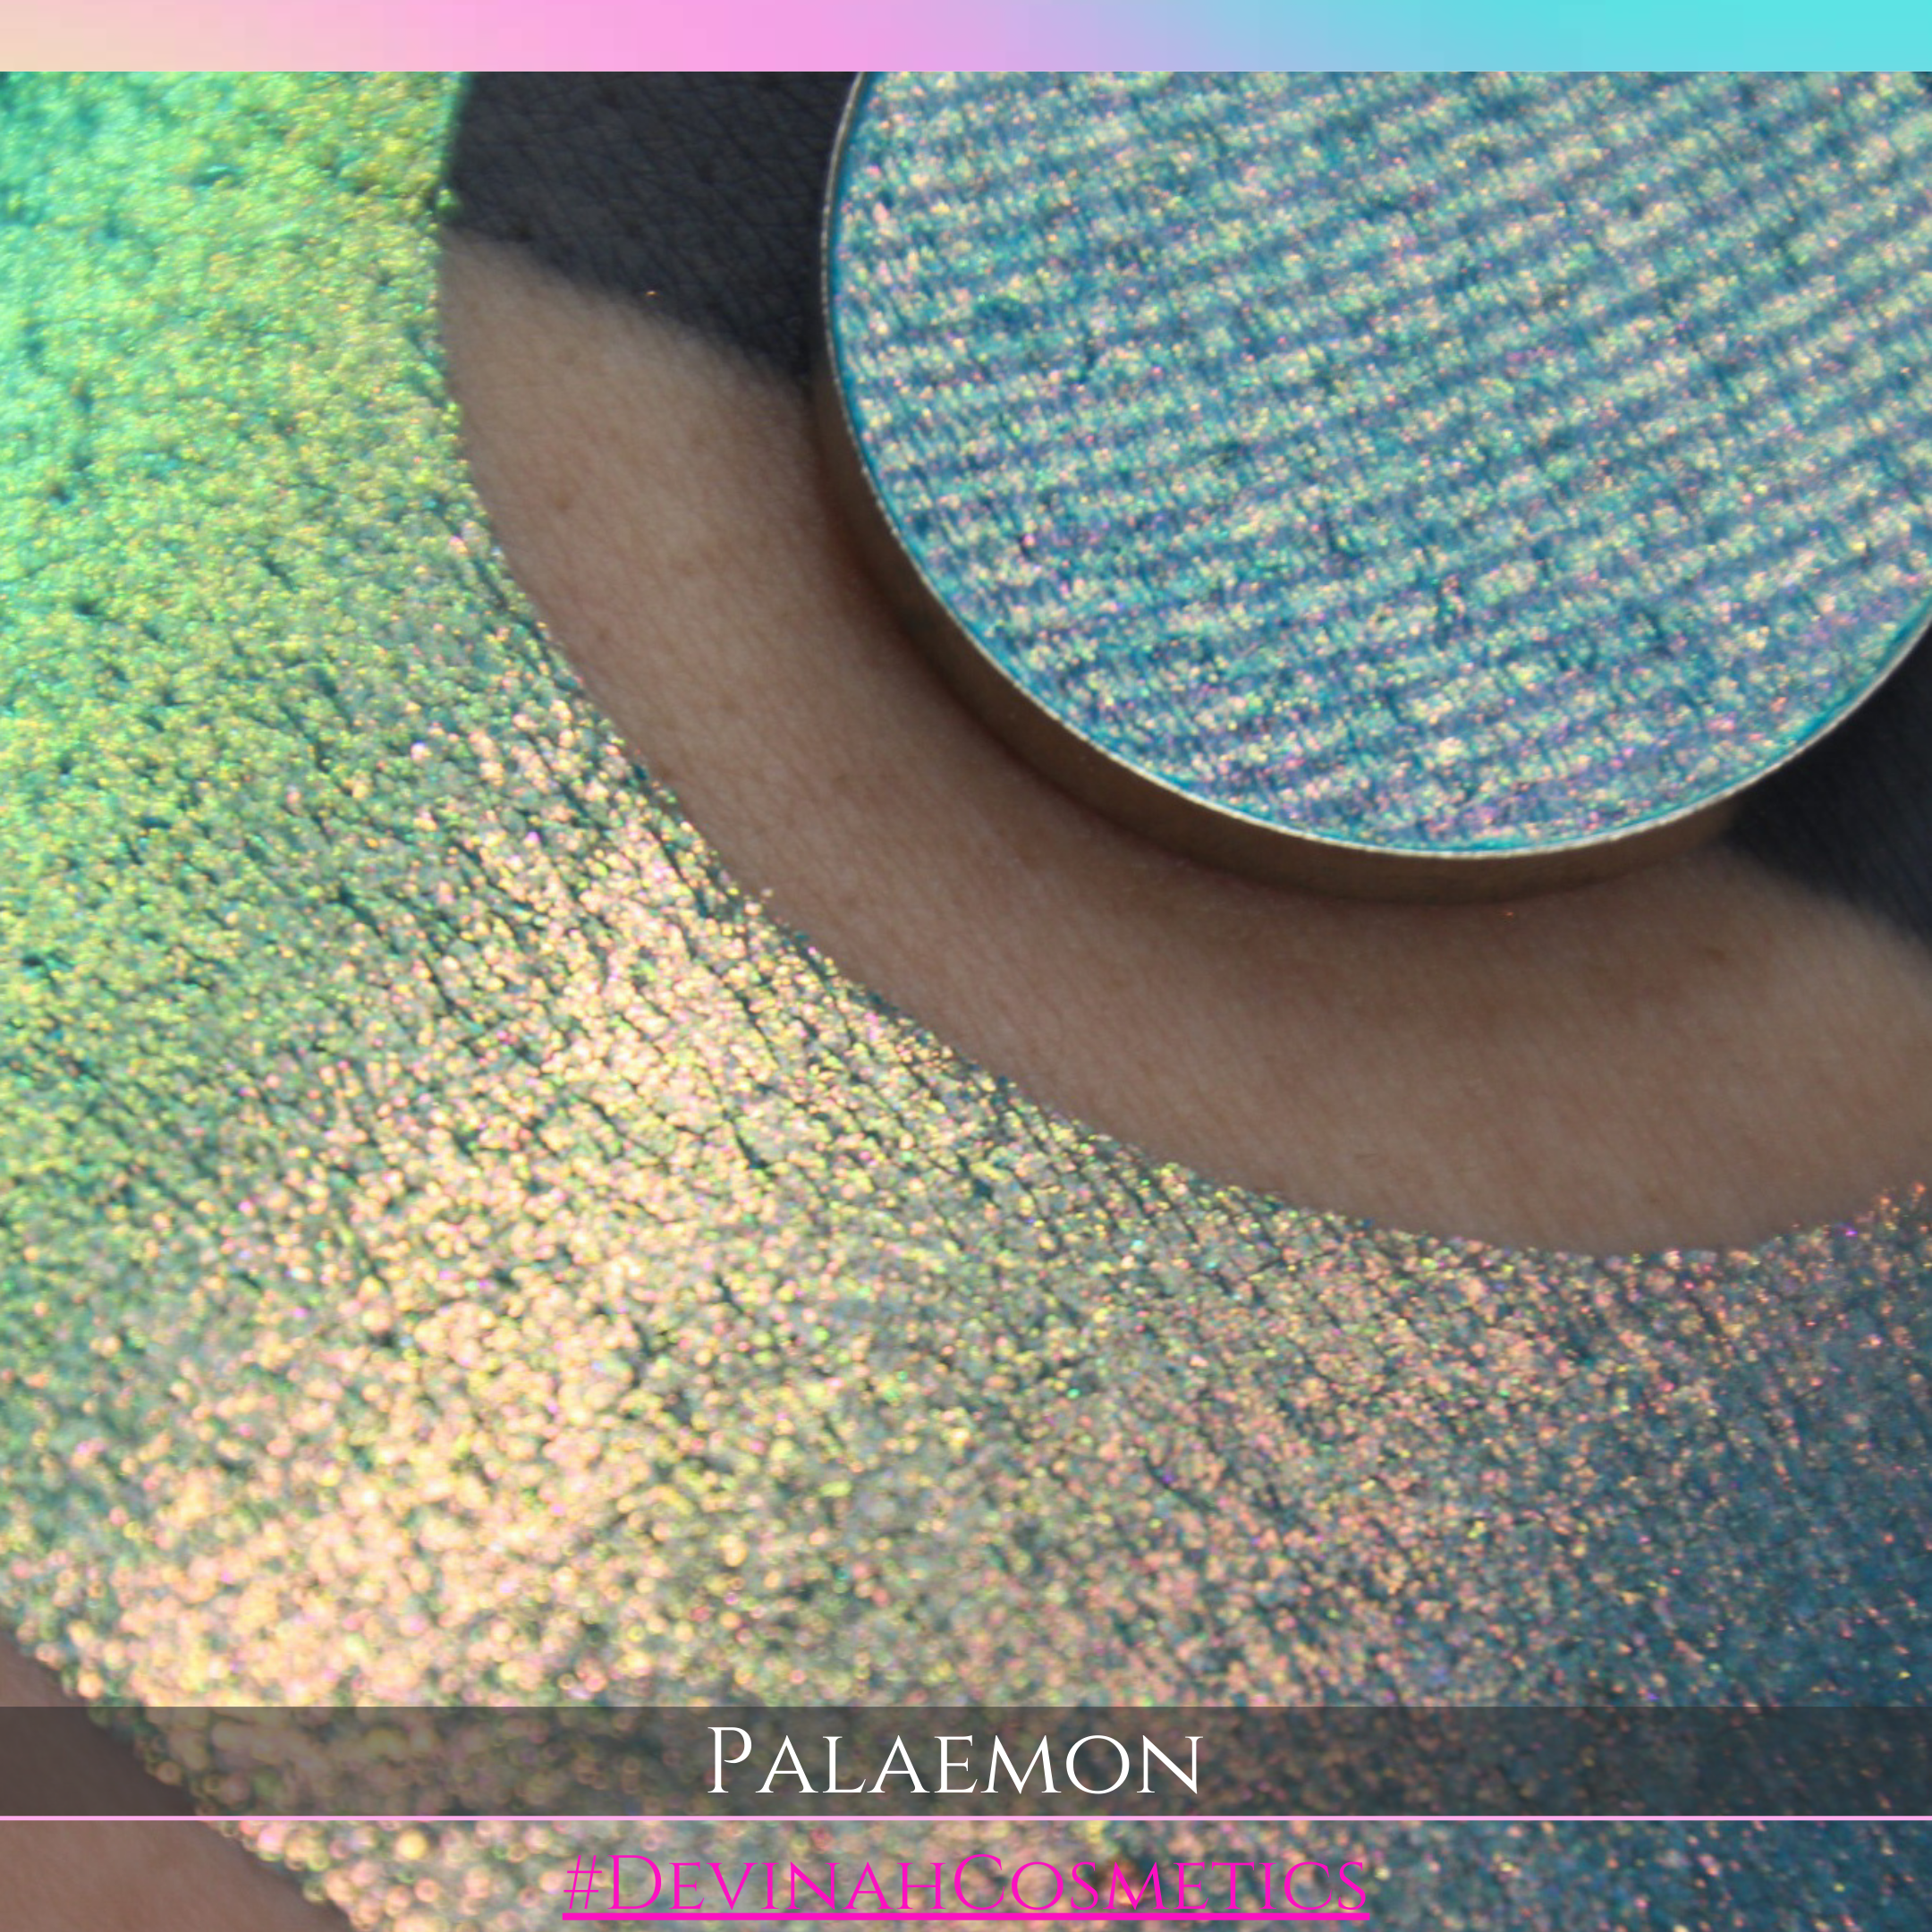 PALAEMON Pressed Pigment